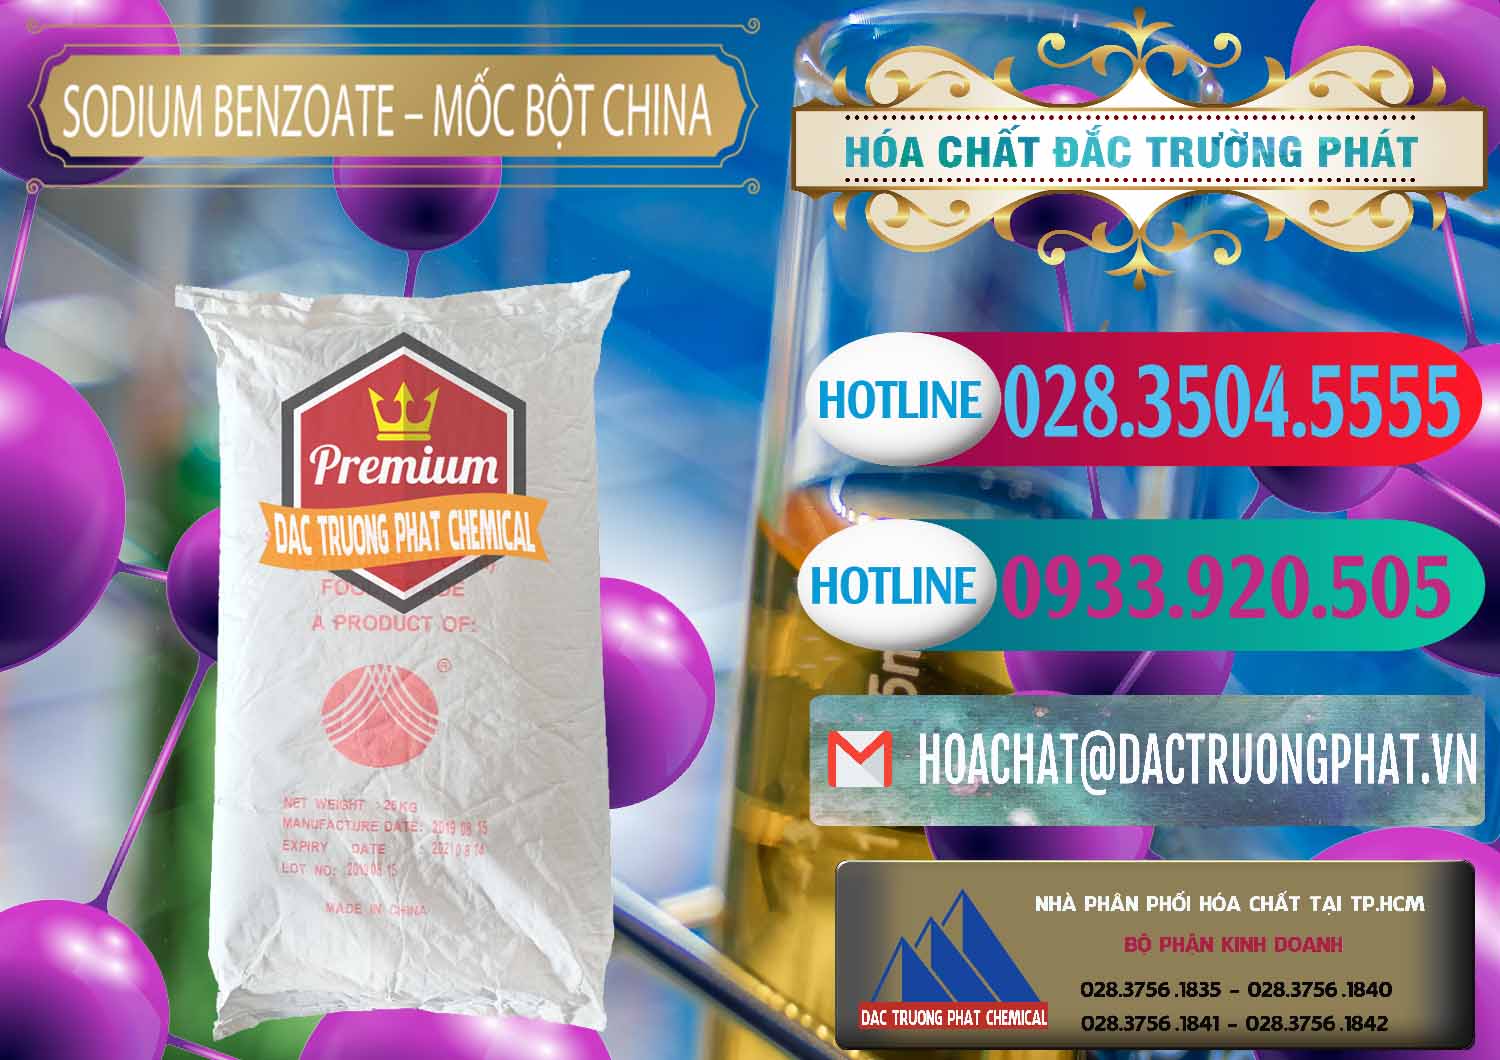 Cty chuyên bán & phân phối Sodium Benzoate - Mốc Bột Chữ Cam Food Grade Trung Quốc China - 0135 - Kinh doanh _ cung cấp hóa chất tại TP.HCM - truongphat.vn